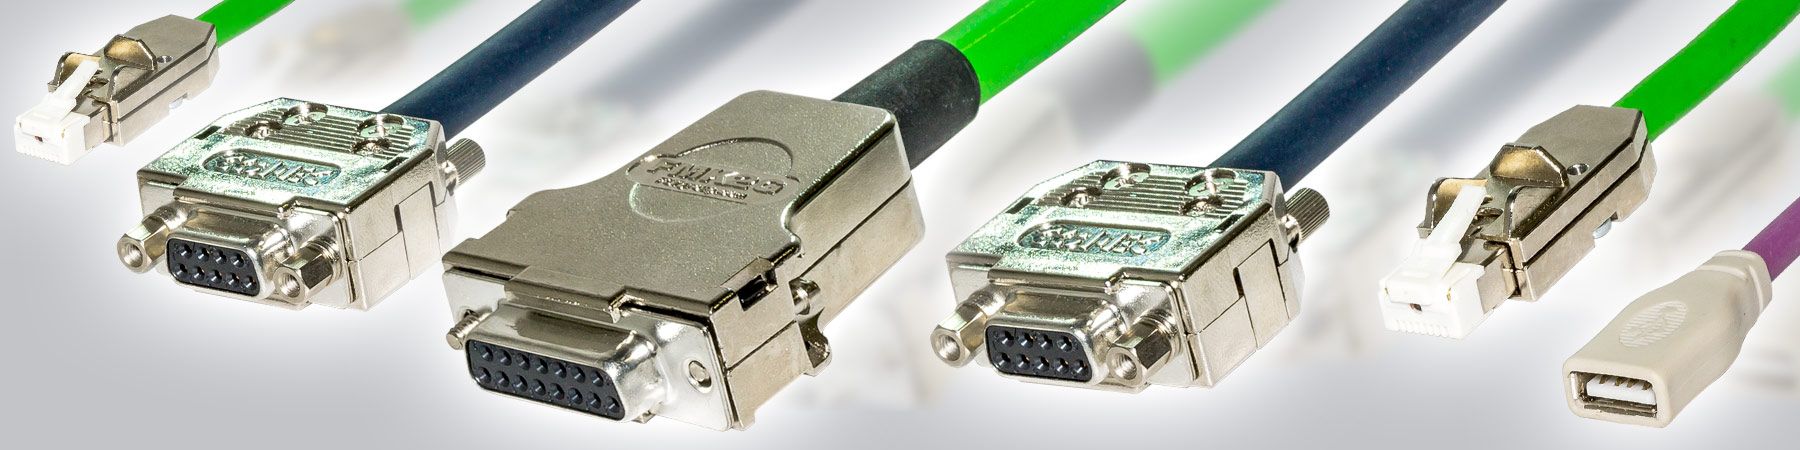 Foto: Beispiele Kabelkonfektionierung der AMA Elektronik GmbH